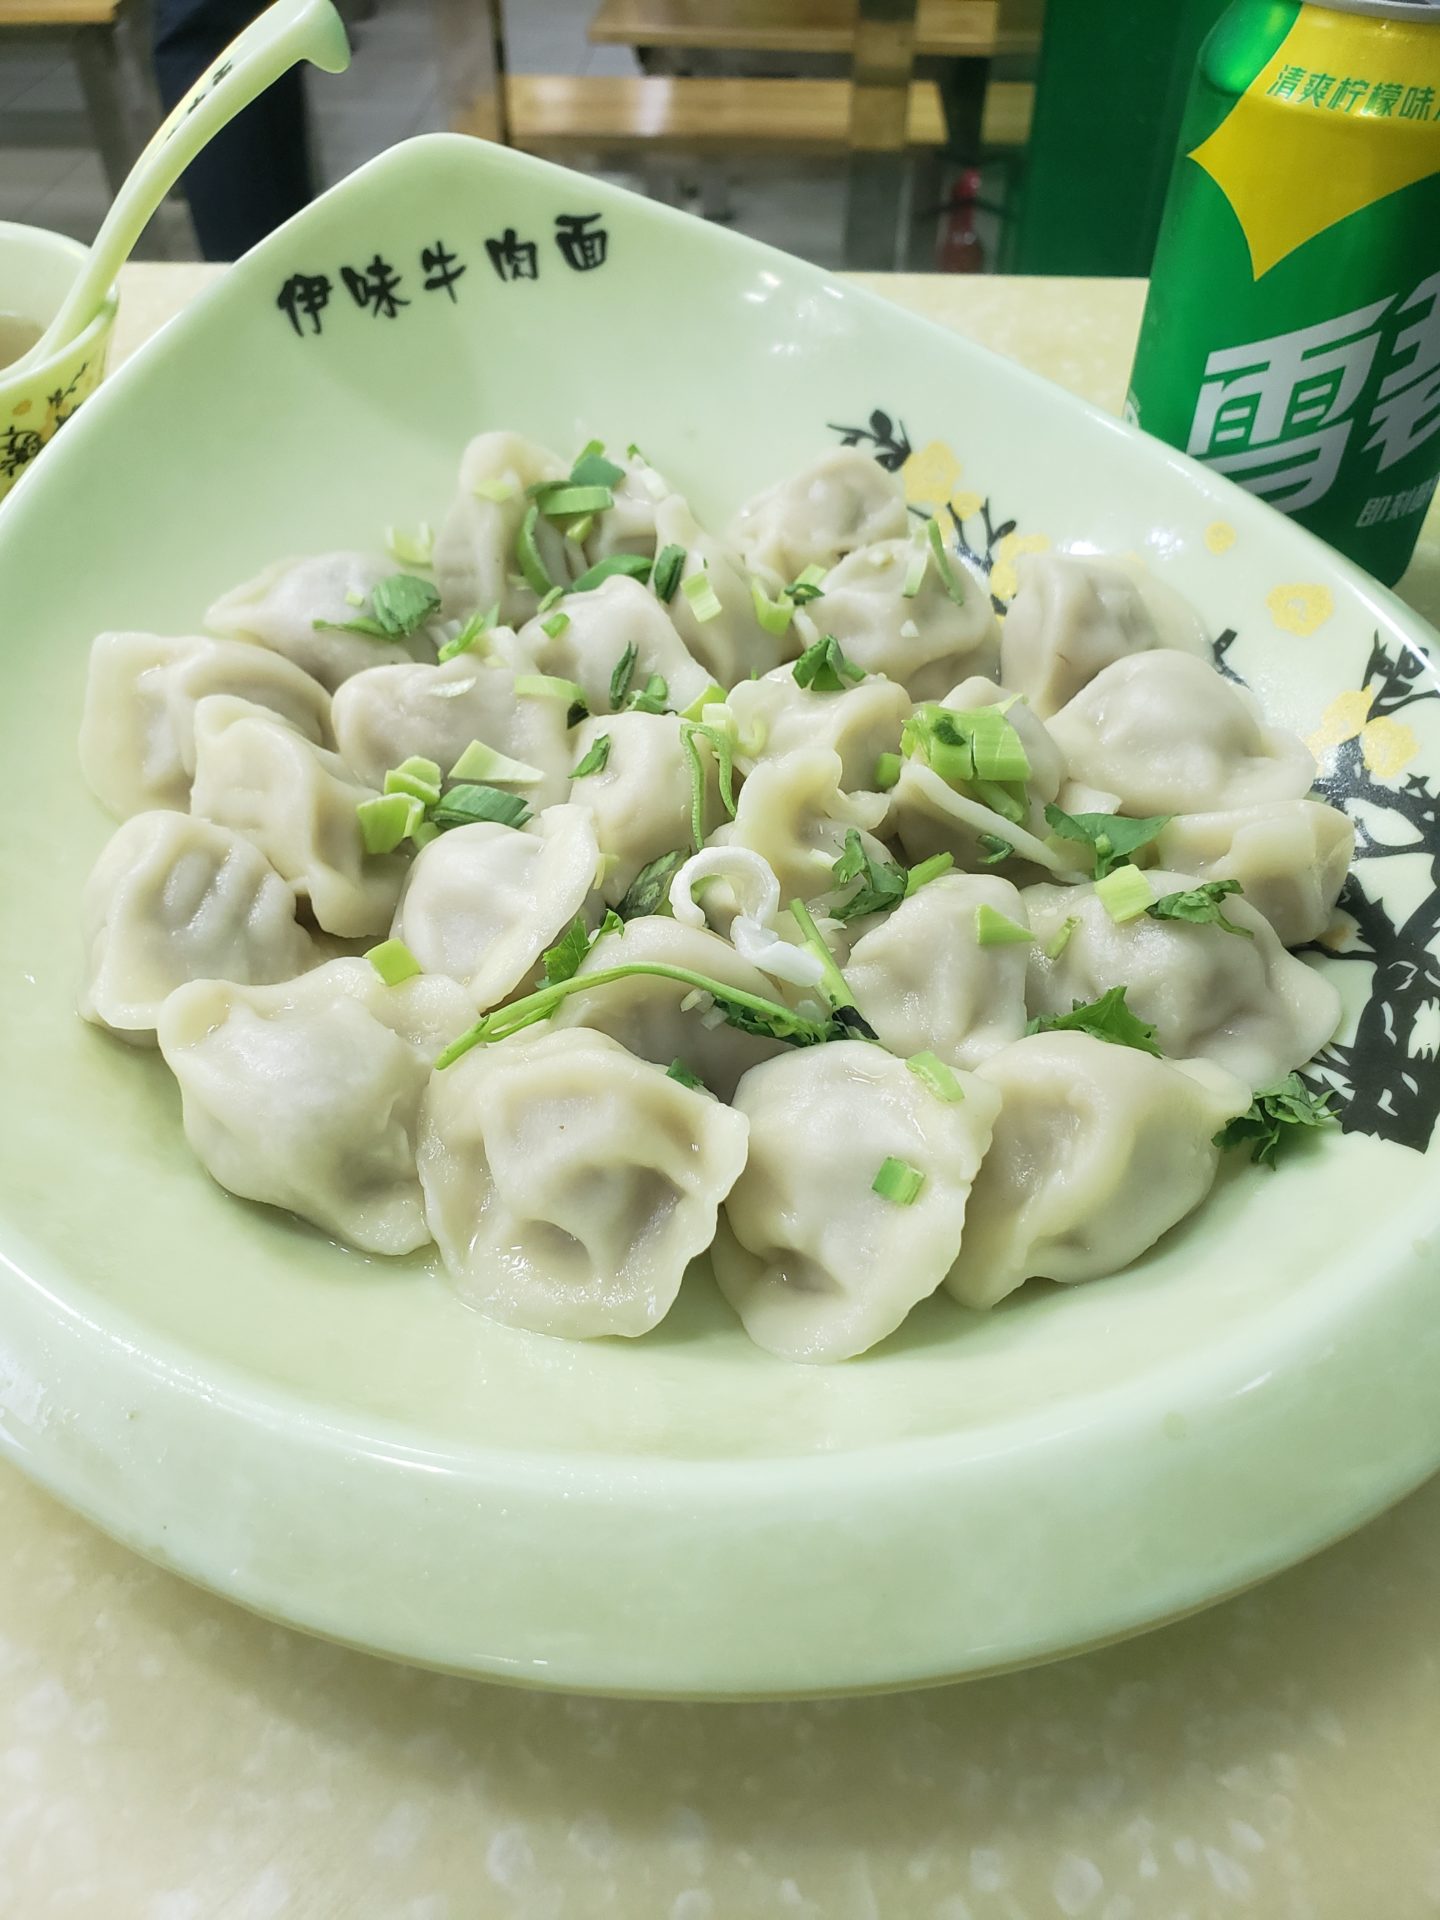 a plate of dumplings